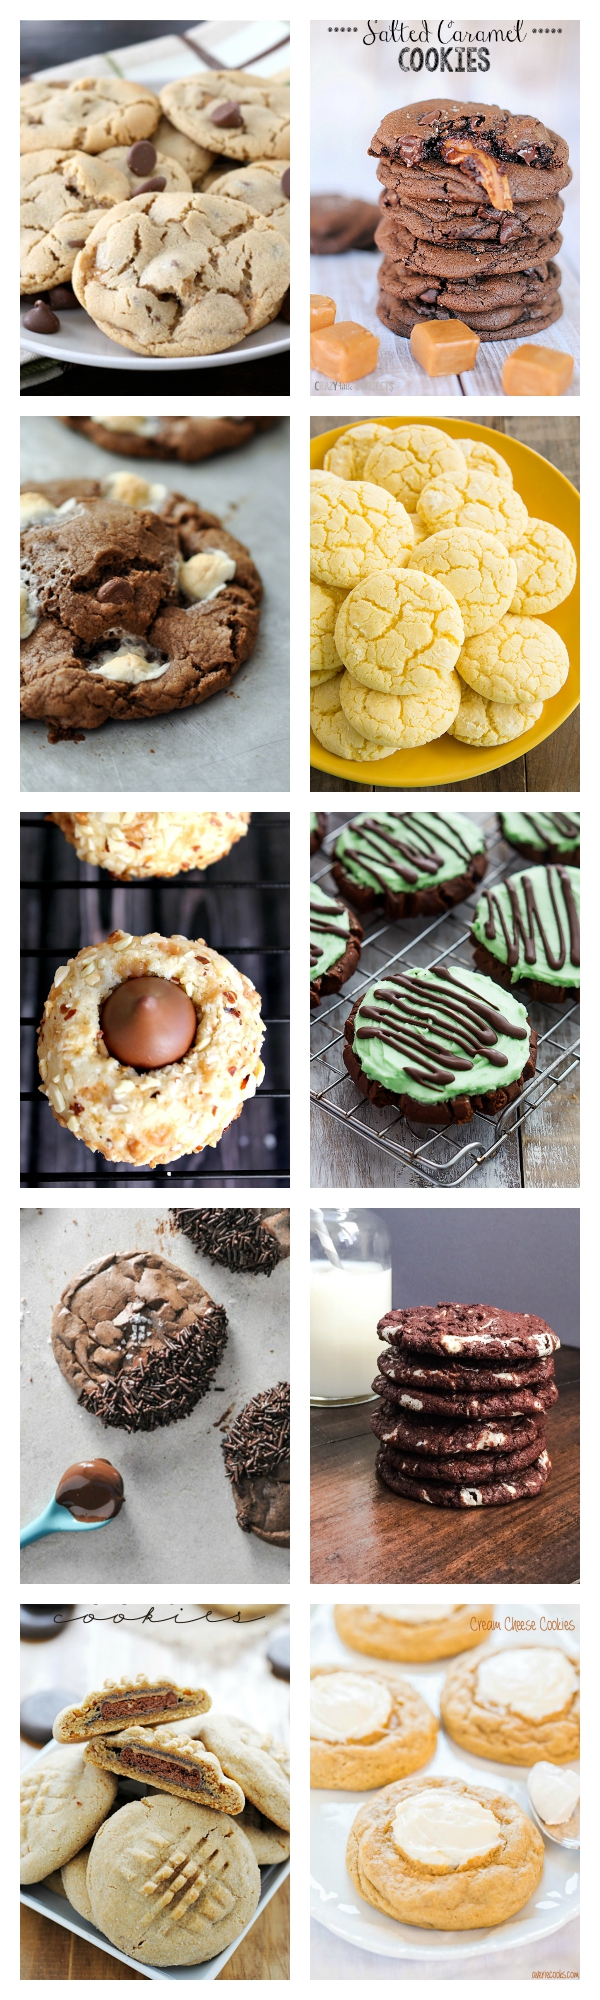 Delicious Cookie Ideas!